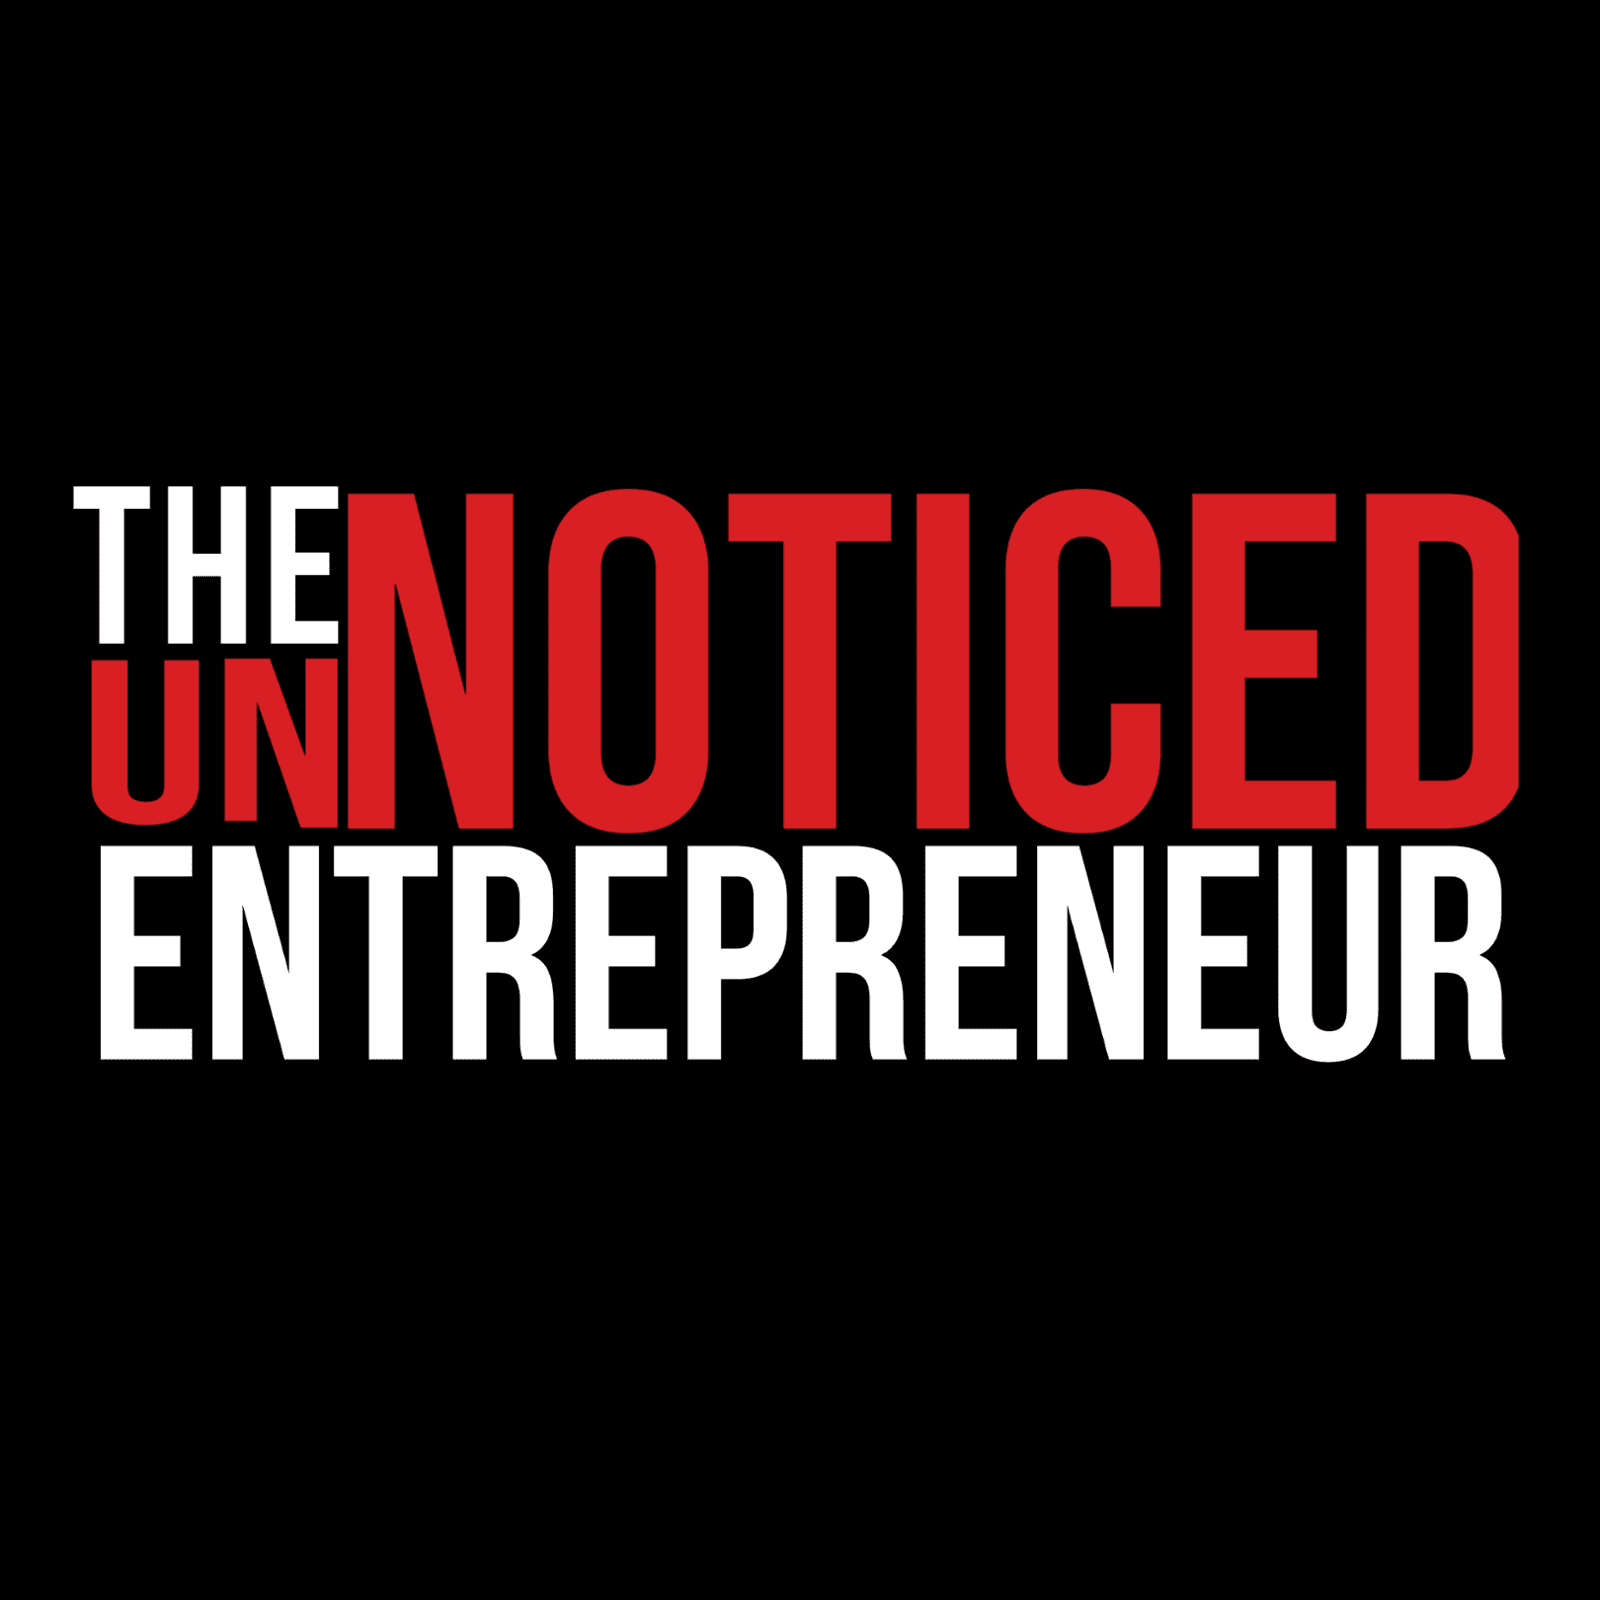 UnNoticed Entrepreneur Logo Square